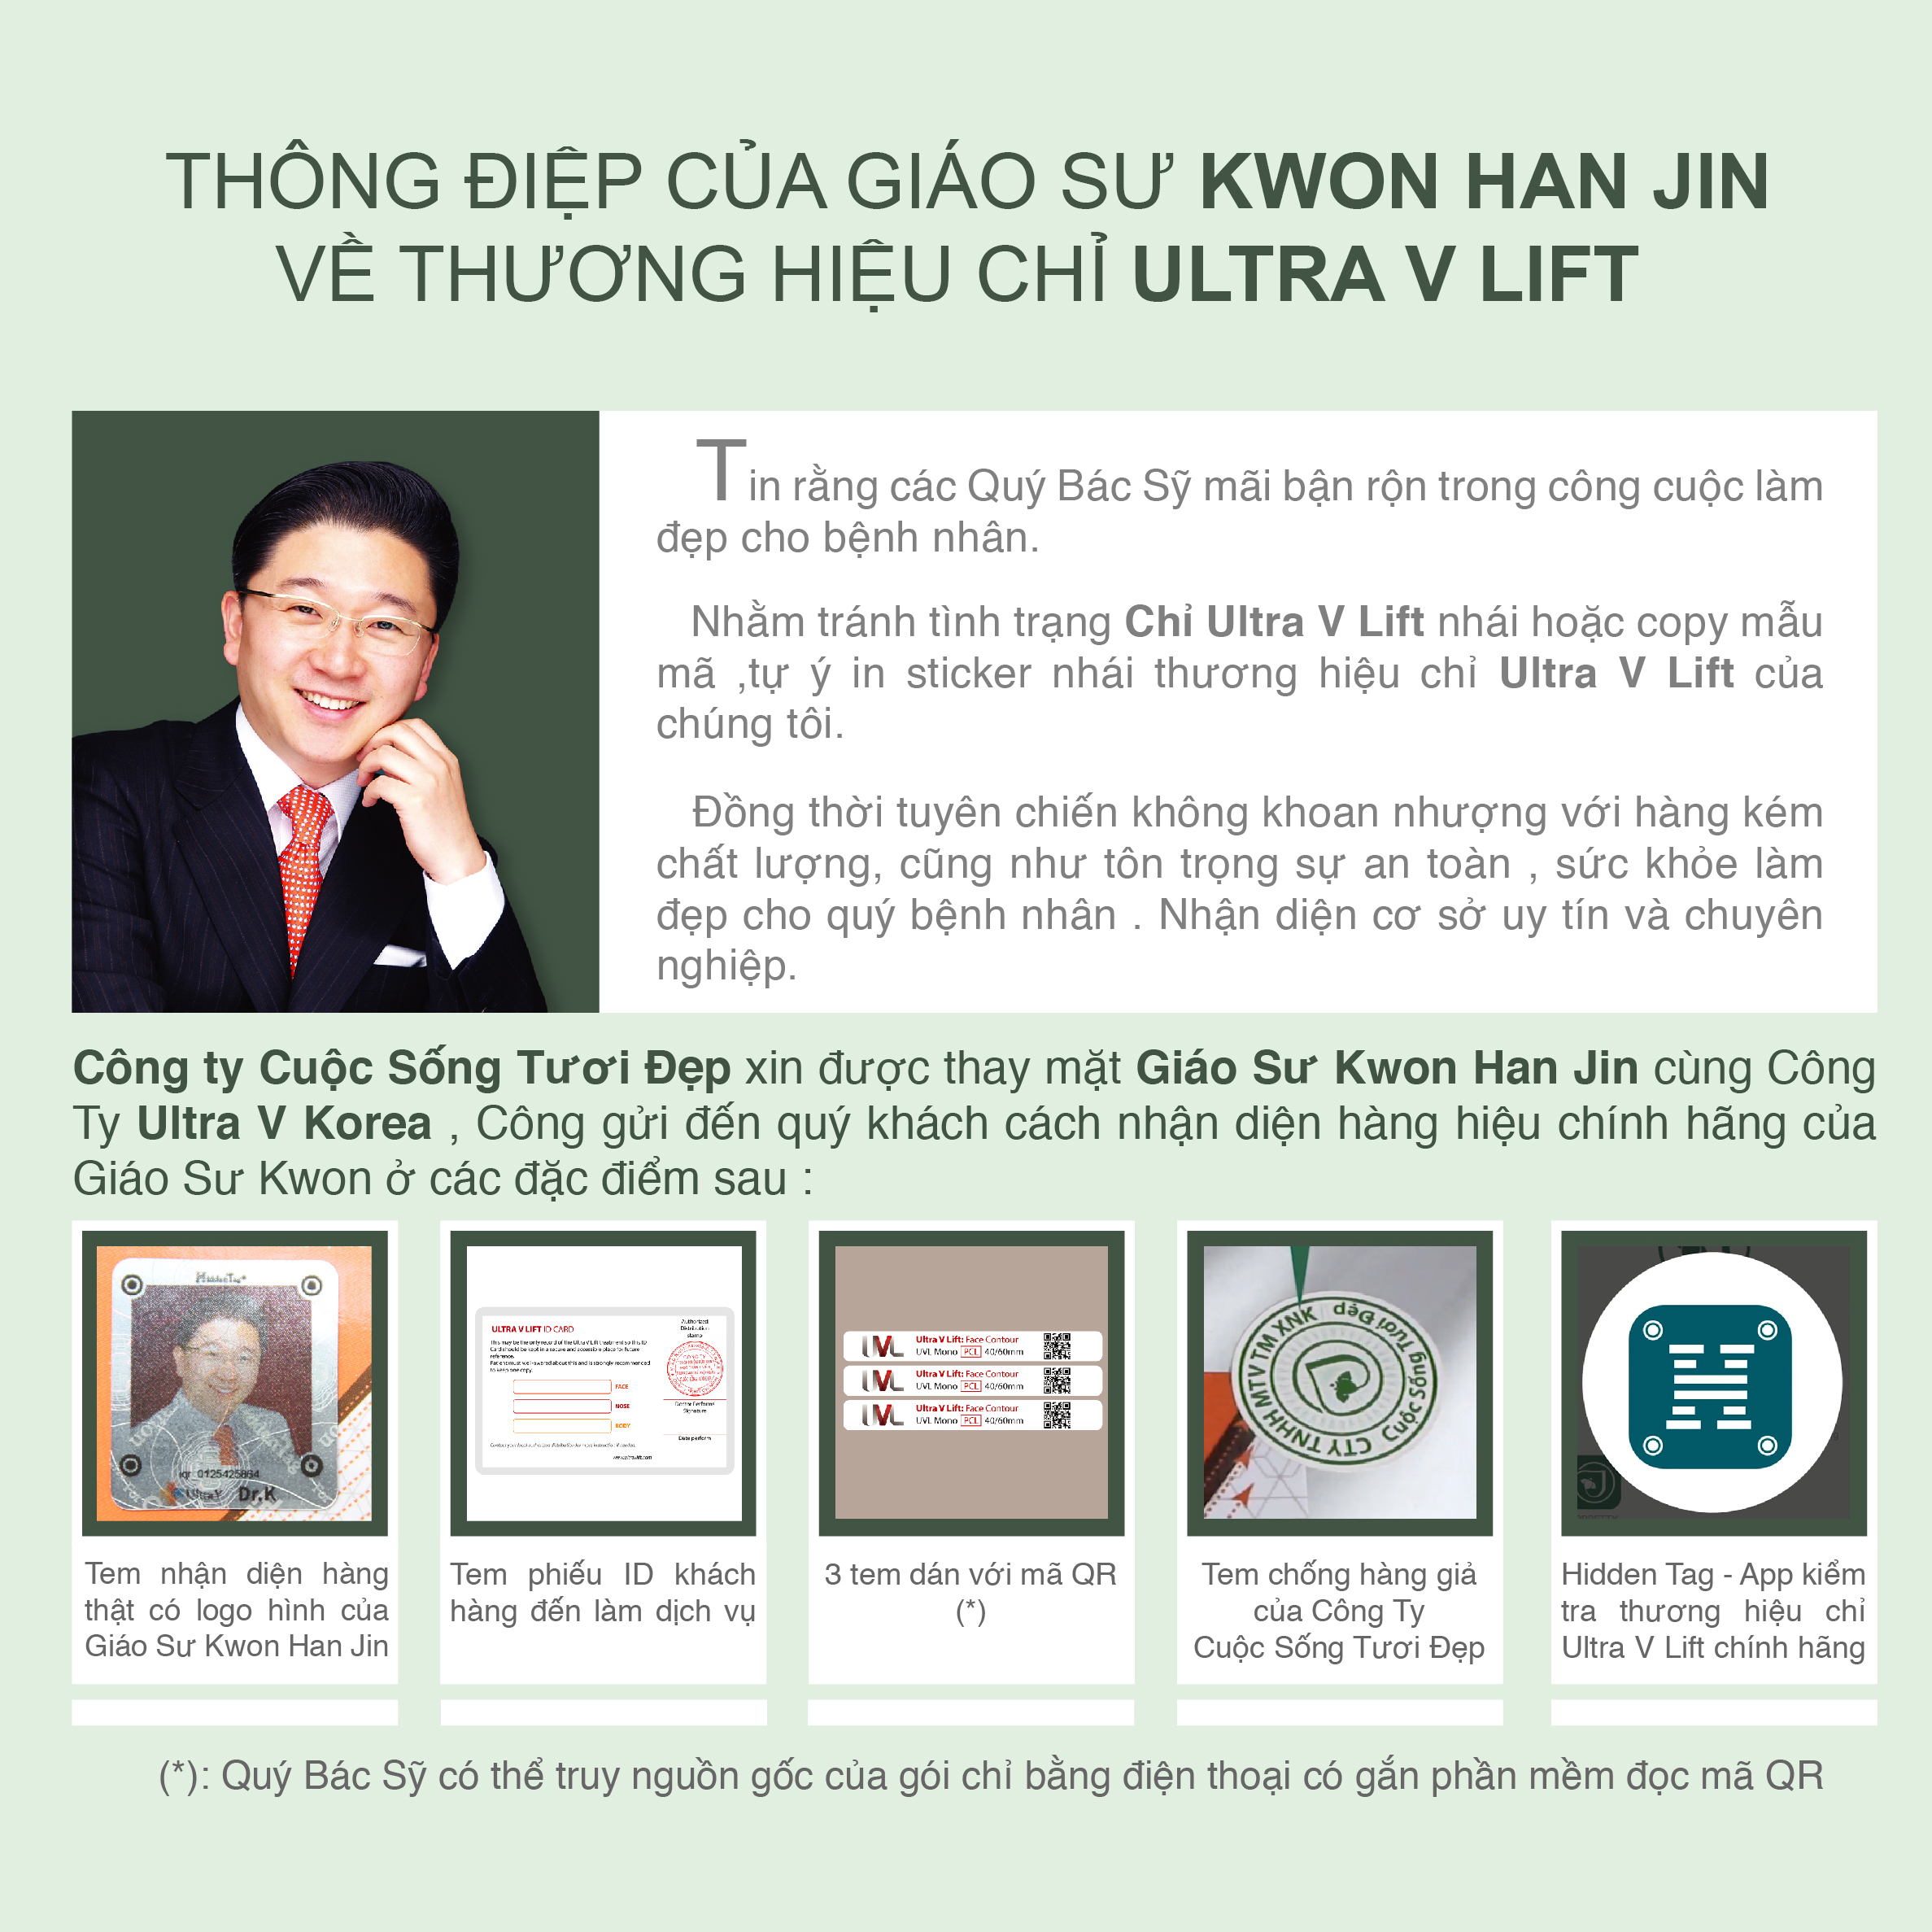 Thông điệp từ GS Kwon qua Chỉ Ultra V Lift